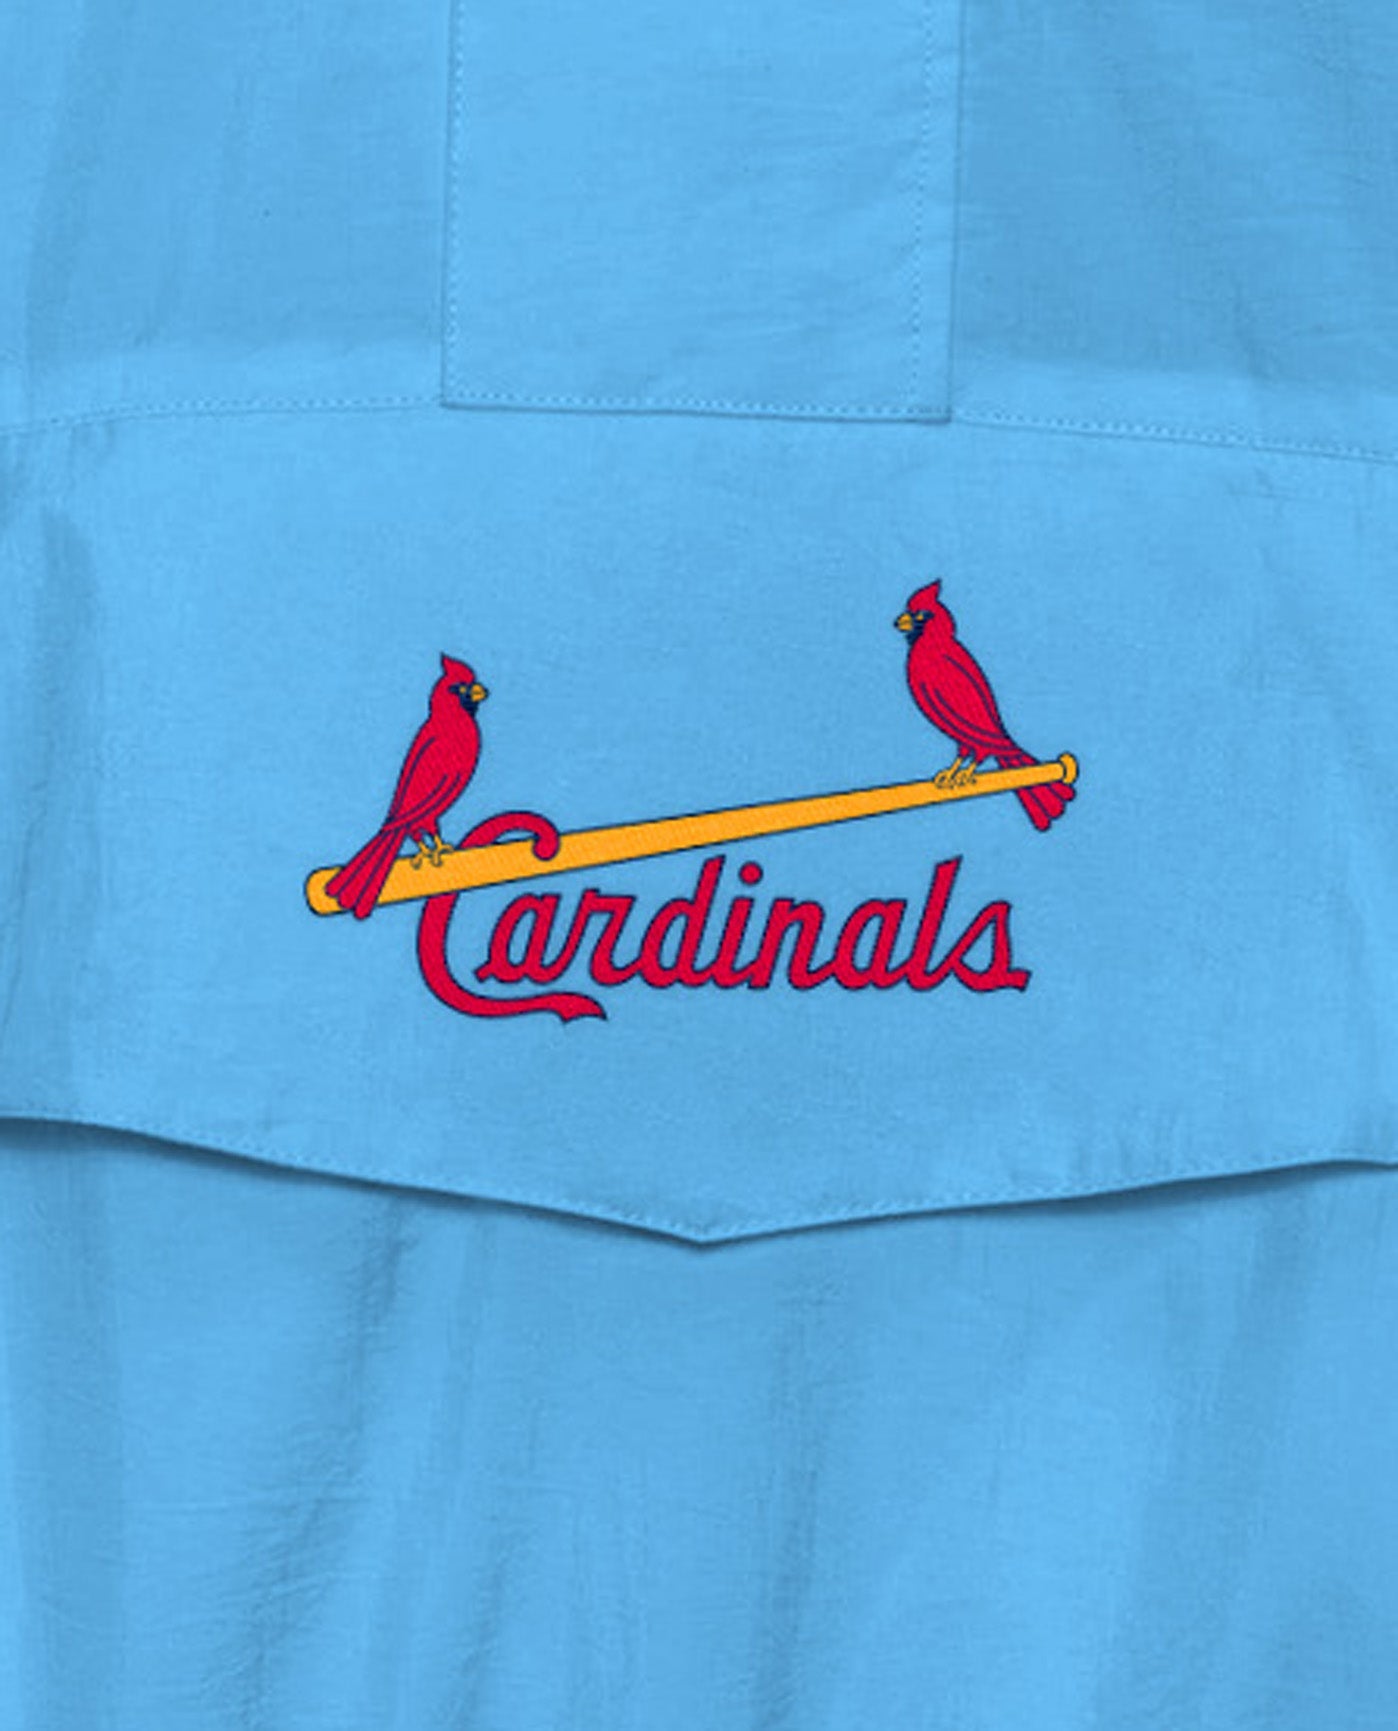 st louis cardinals home jersey color